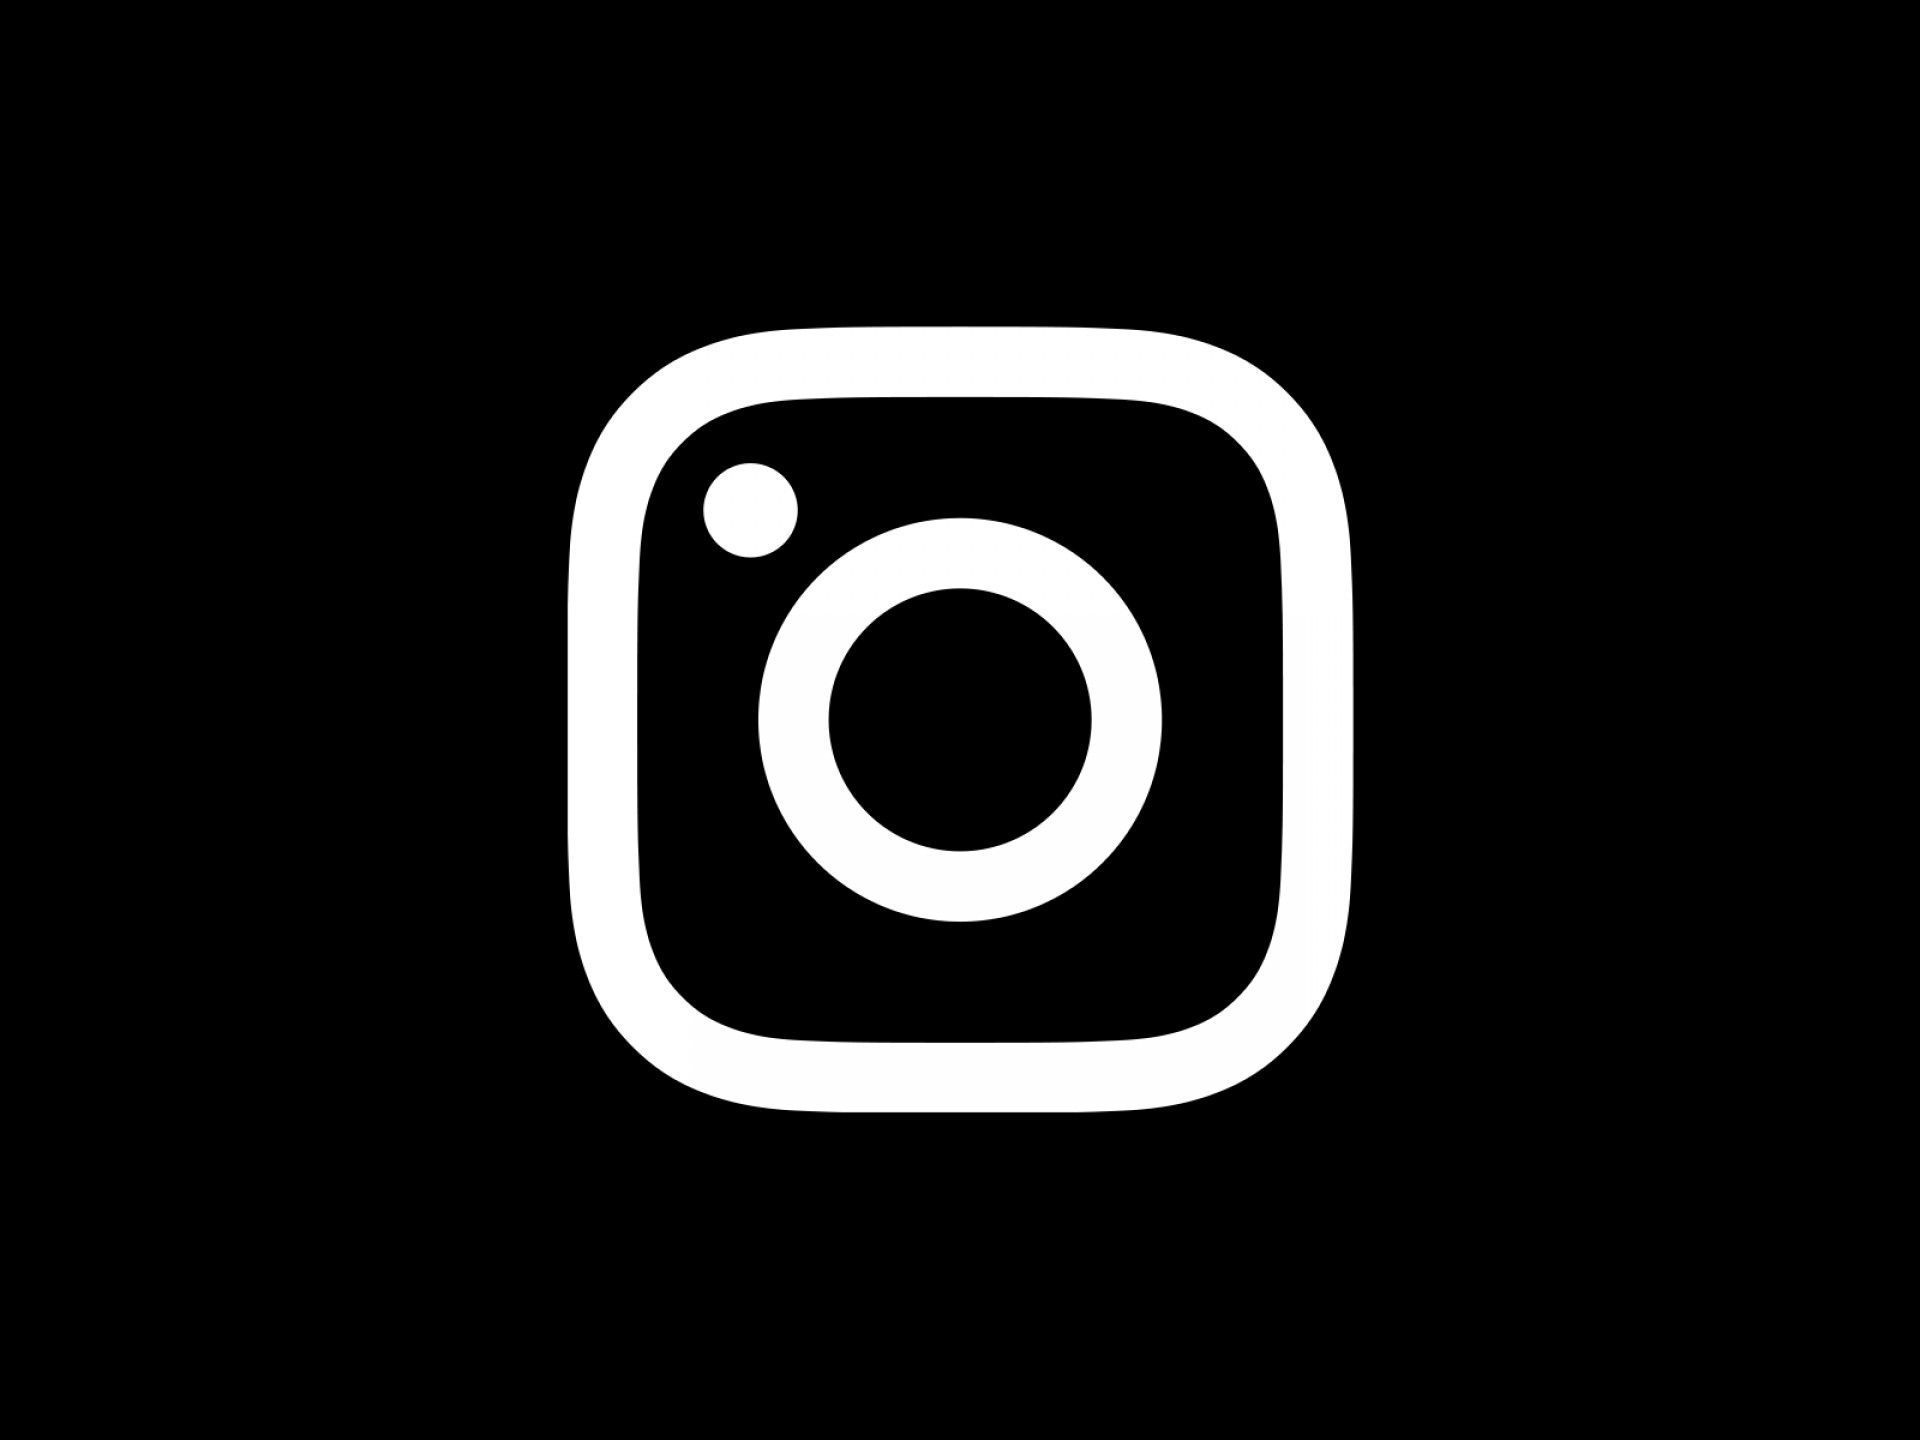 instagram logo. Instagram logo, Twitter logo, Vector icons free